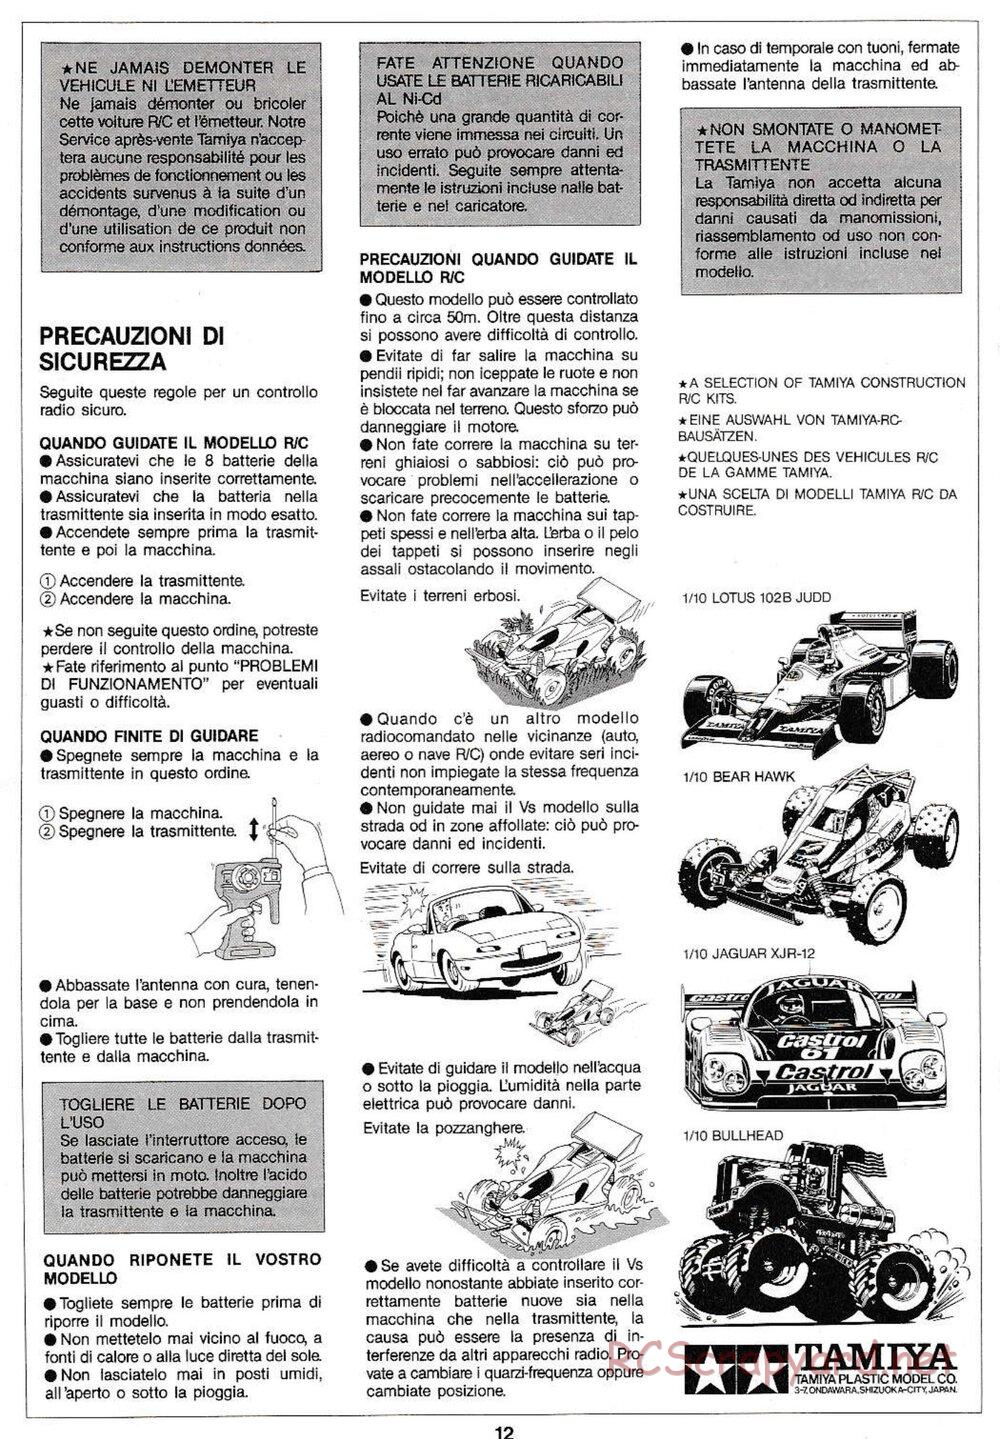 Tamiya - Manta Ray QD Chassis - Manual - Page 12